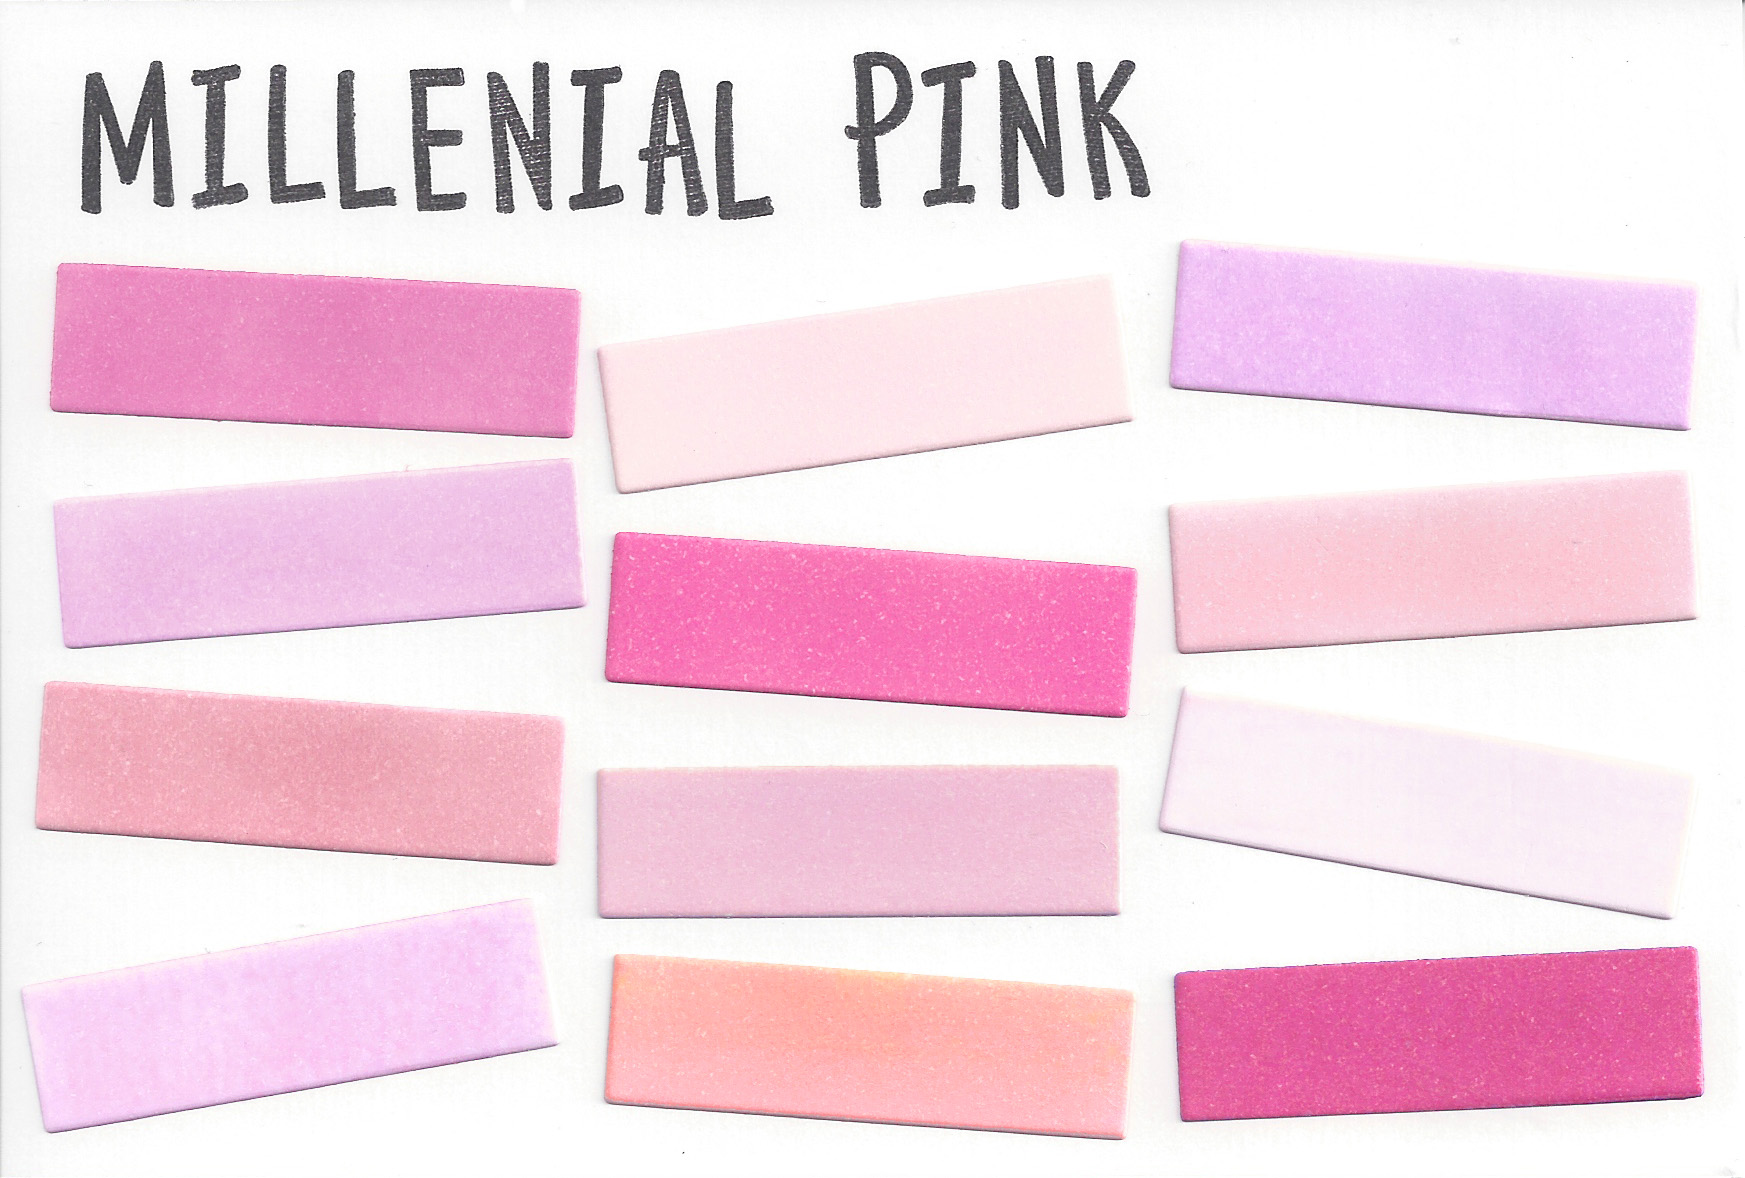 ミレニアルピンク,millennial pink,流行,色,トレンド,カラー,とは,